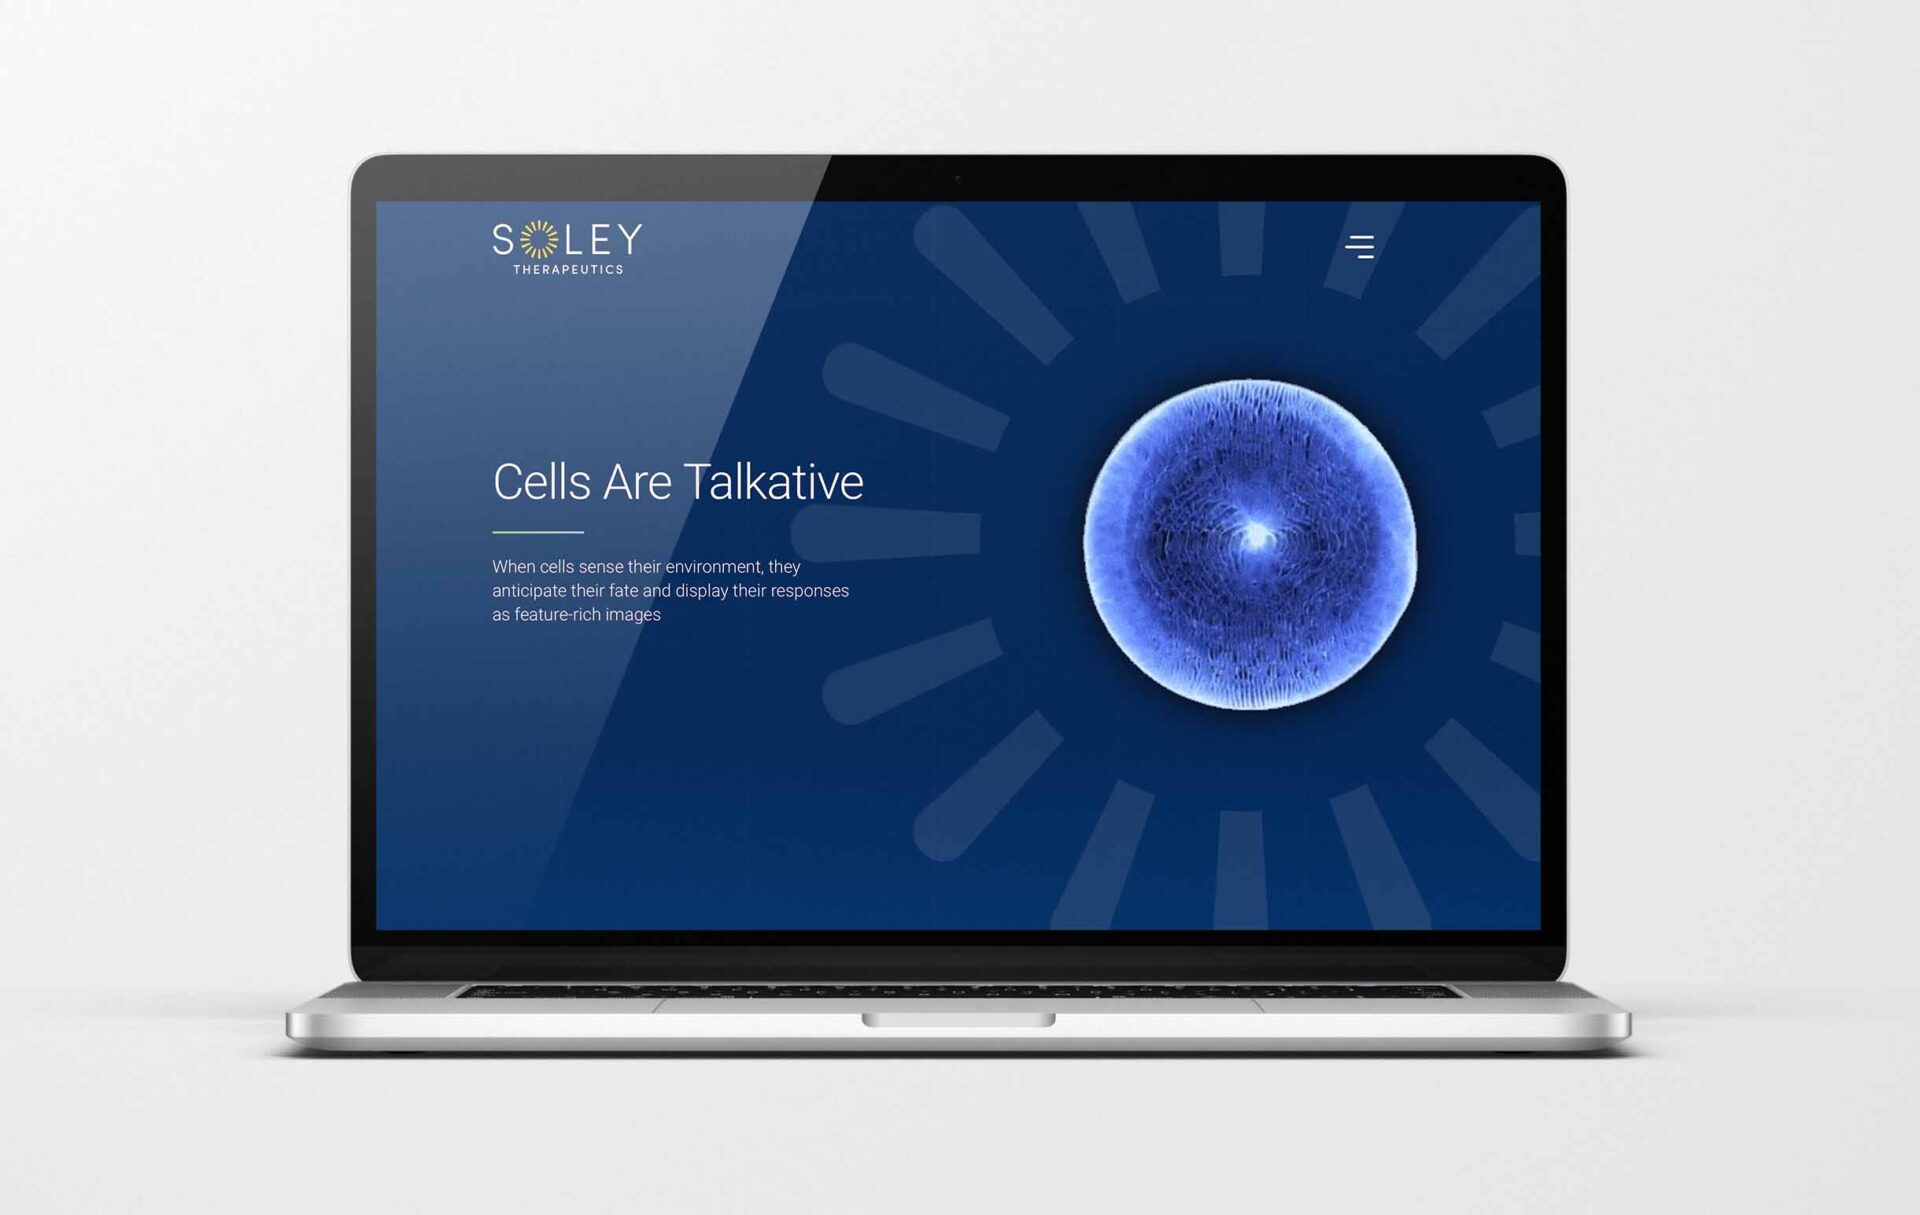 Soley Therapeutics Website Design Example